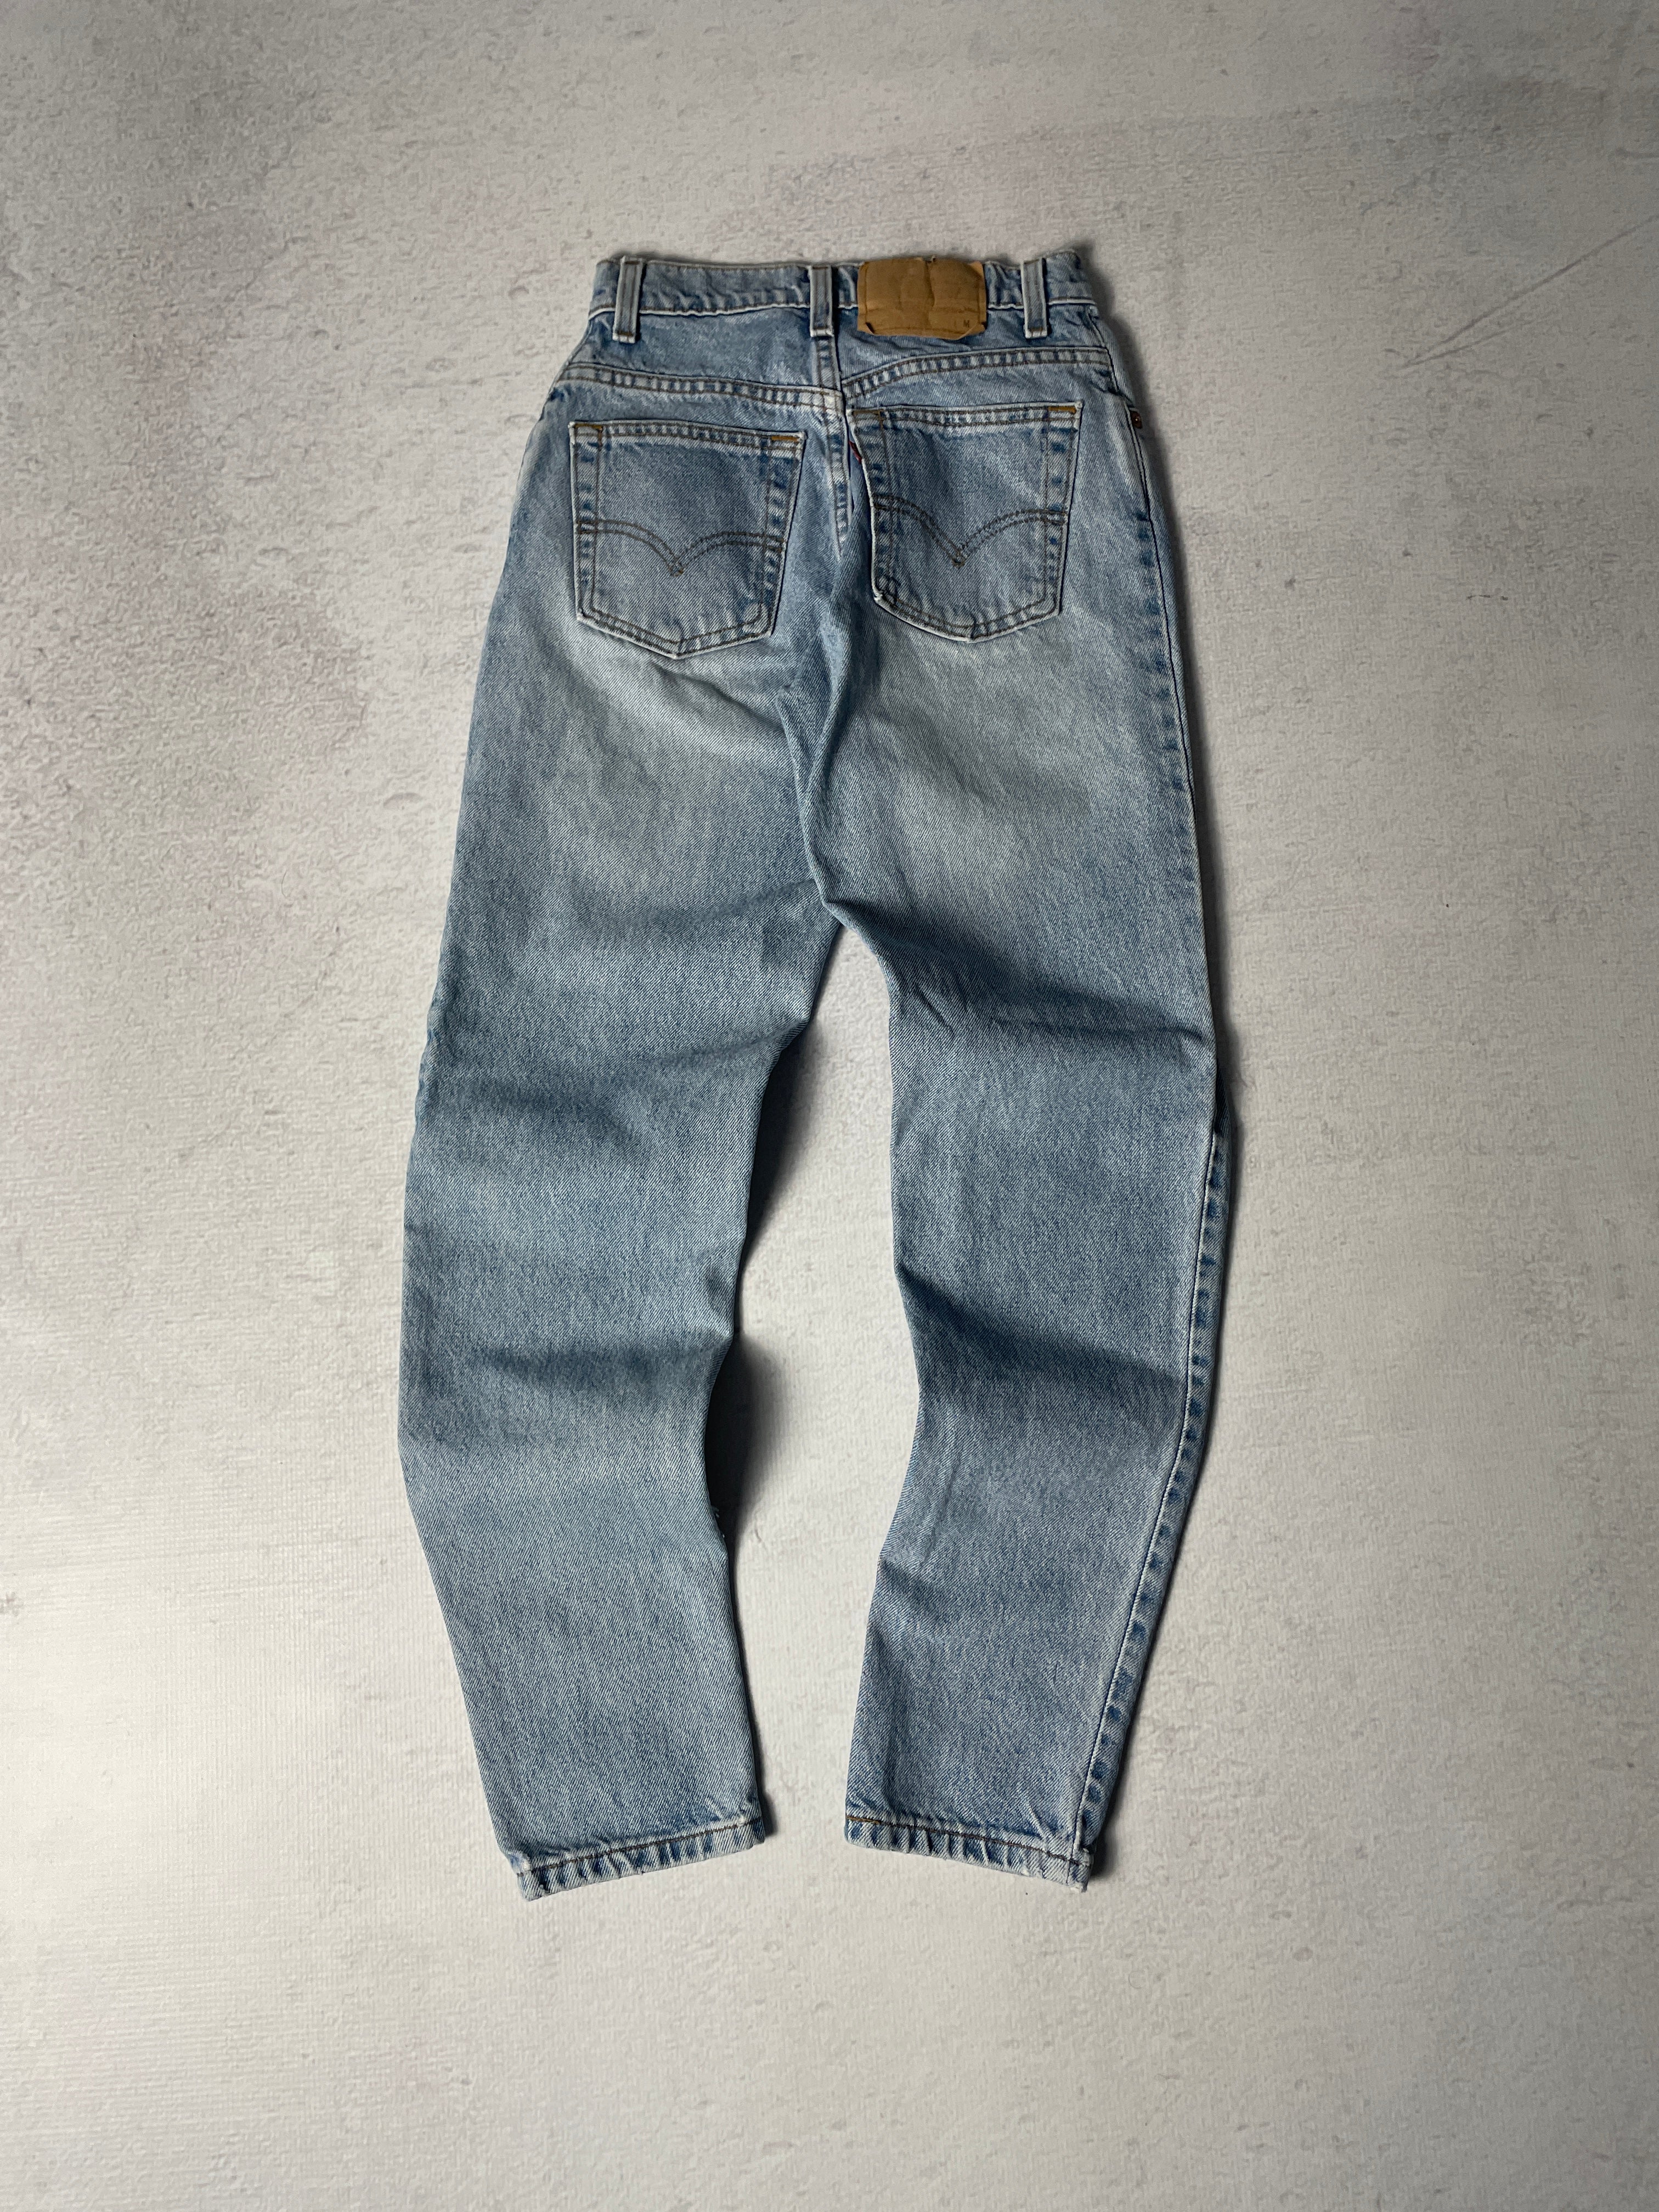 Vintage Levis 550 Jeans - 24Wx30L